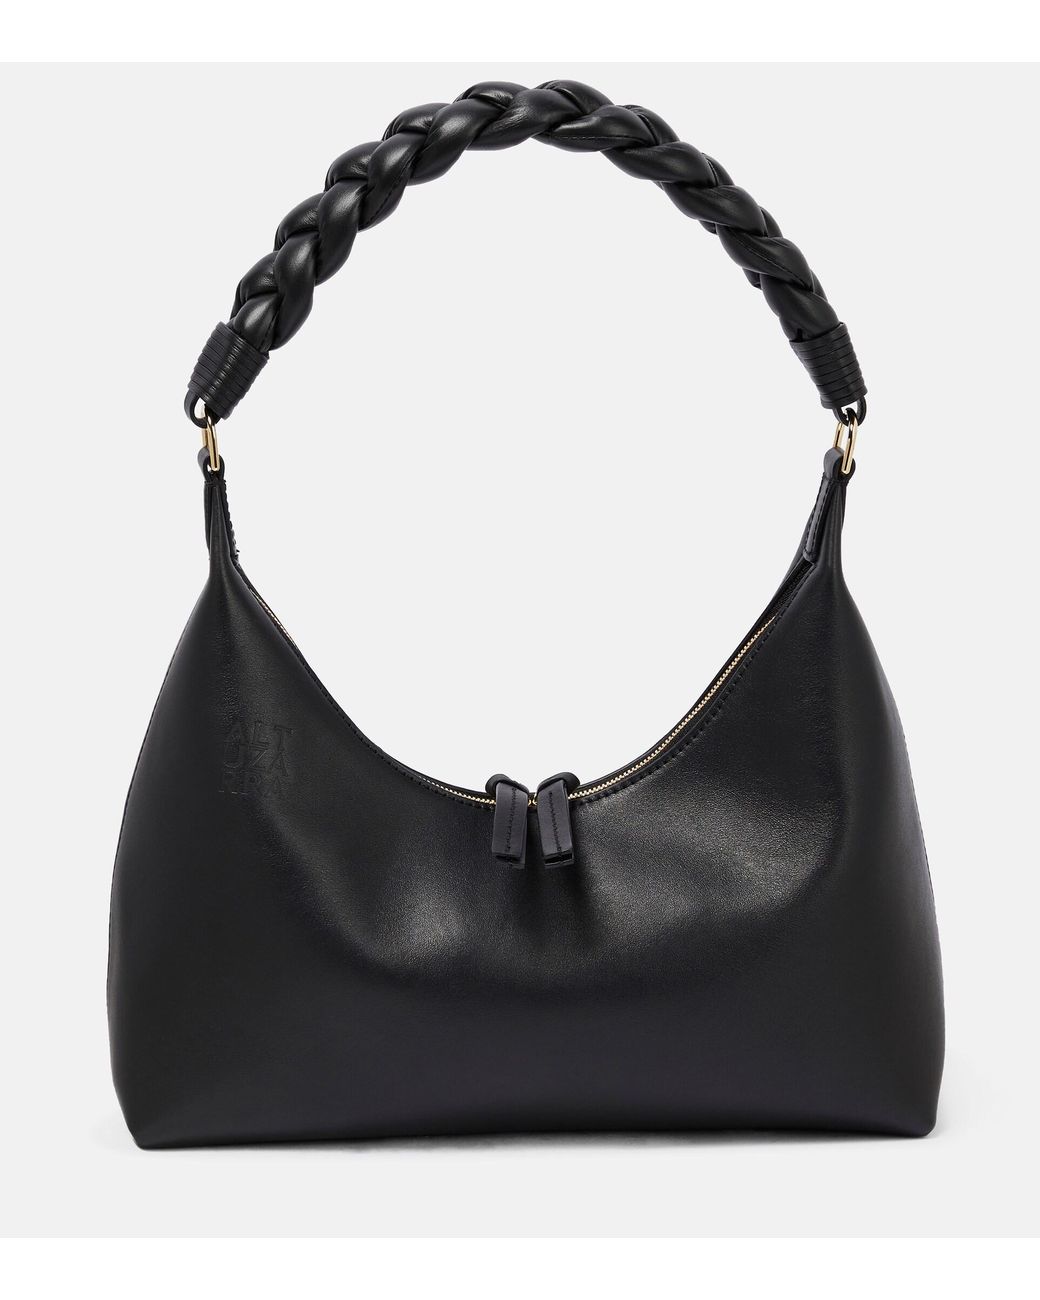 Altuzarra Braided Leather Shoulder Bag in Black | Lyst